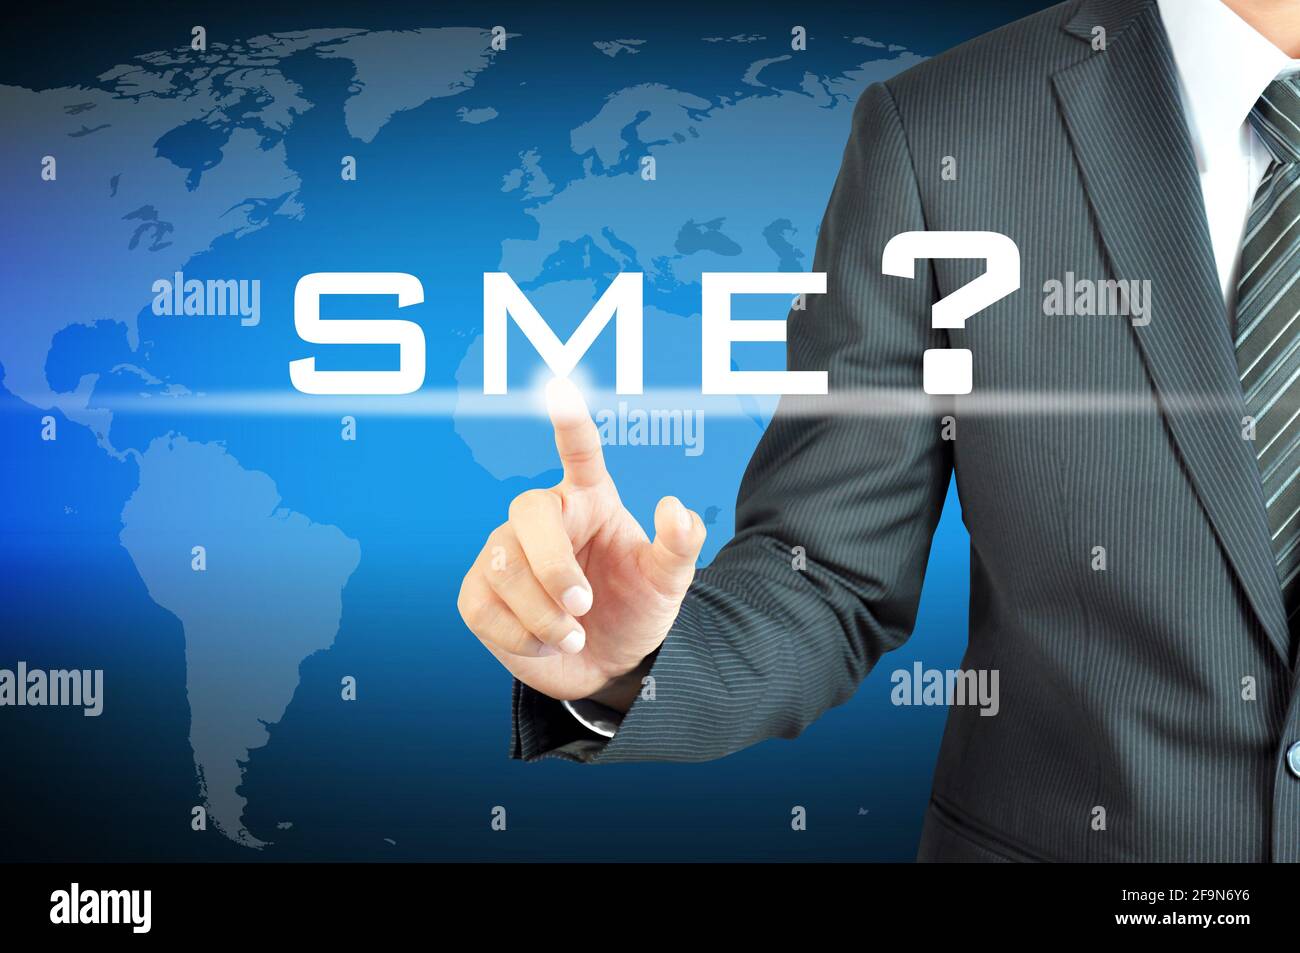 Unternehmer berühren KMU (oder kleine und mittlere Unternehmen) anmelden virtueller Bildschirm - Handels- und Geschäftskonzept Stockfoto